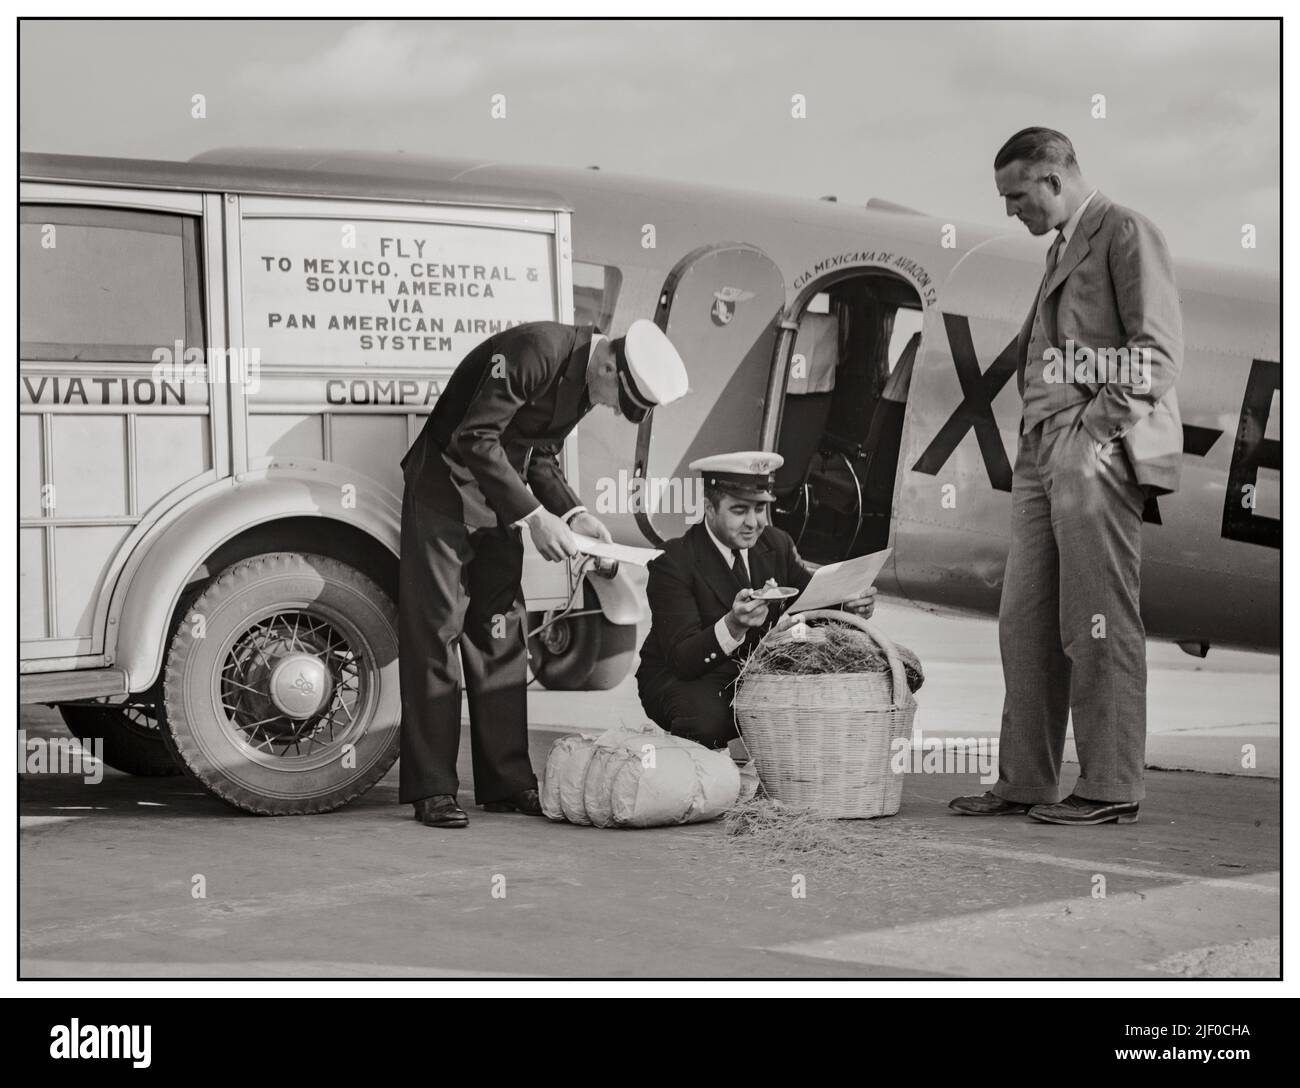 Quarantäneinspektoren 1930s untersuchen Fluggepäck aus Mexiko auf schädliche Insekten. Glendale Airport, Kalifornien Dorothea lange, Fotografin. Farm Security Administration Erstellt/Veröffentlicht Am 1937. Mai. Kalifornien USA Stadt Glendale Land Vereinigte Staaten County Los Angeles County Staat Kalifornien Stockfoto